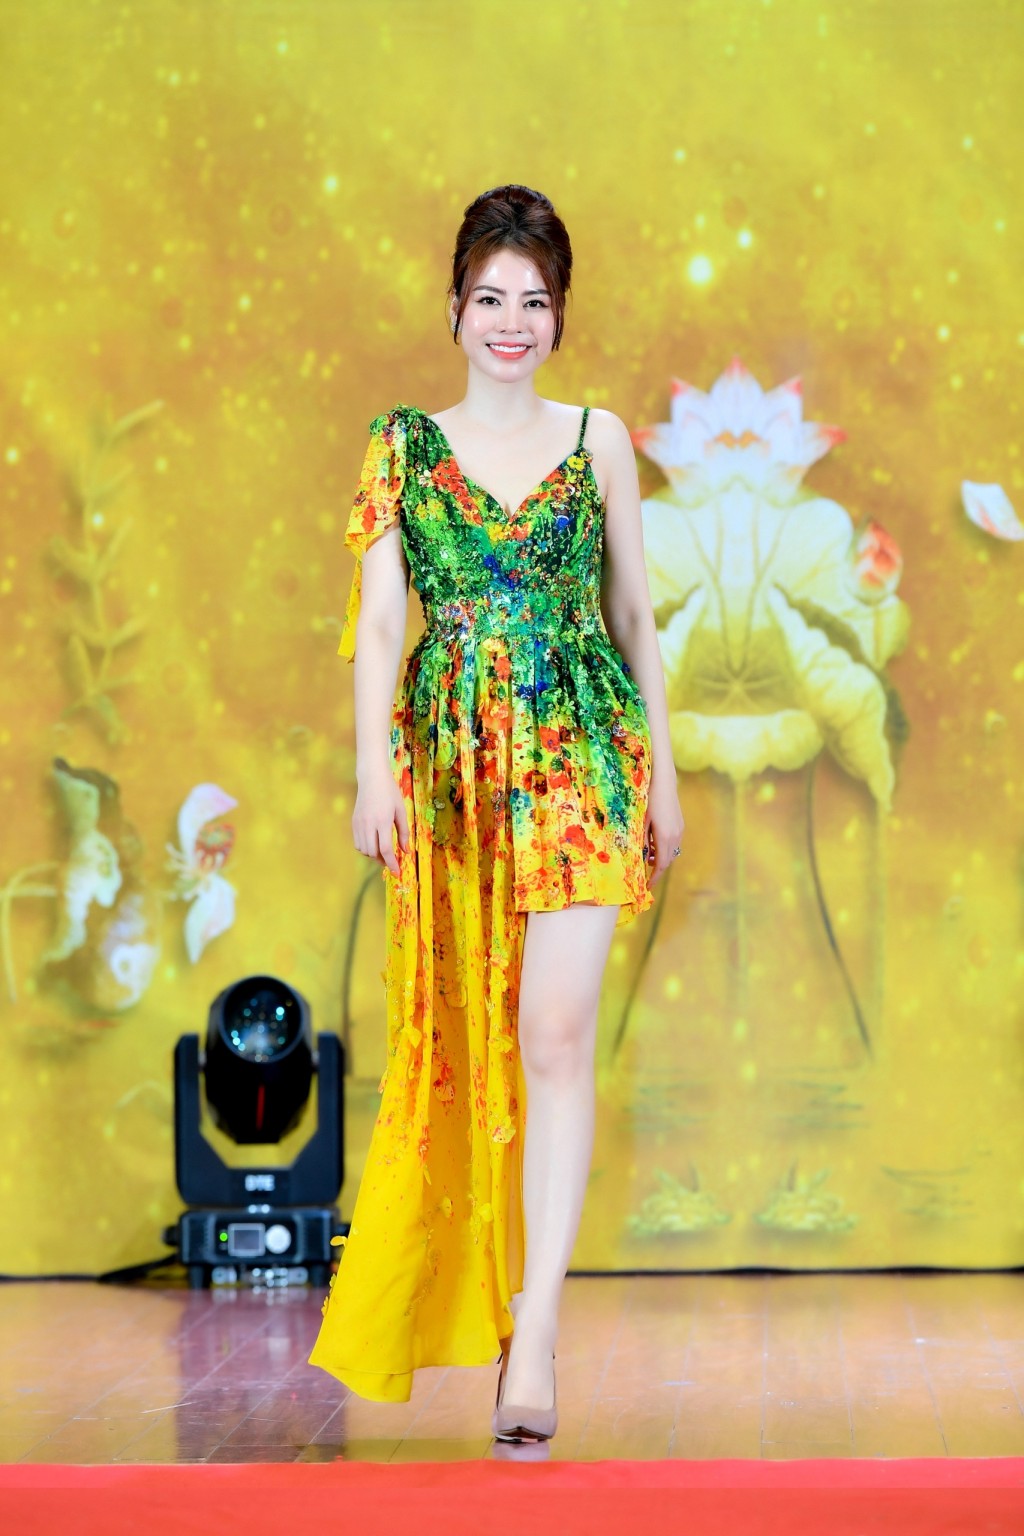 Fashion show “Bông hồng vàng” của NTK Thoa Trần gây tiếng vang lớn